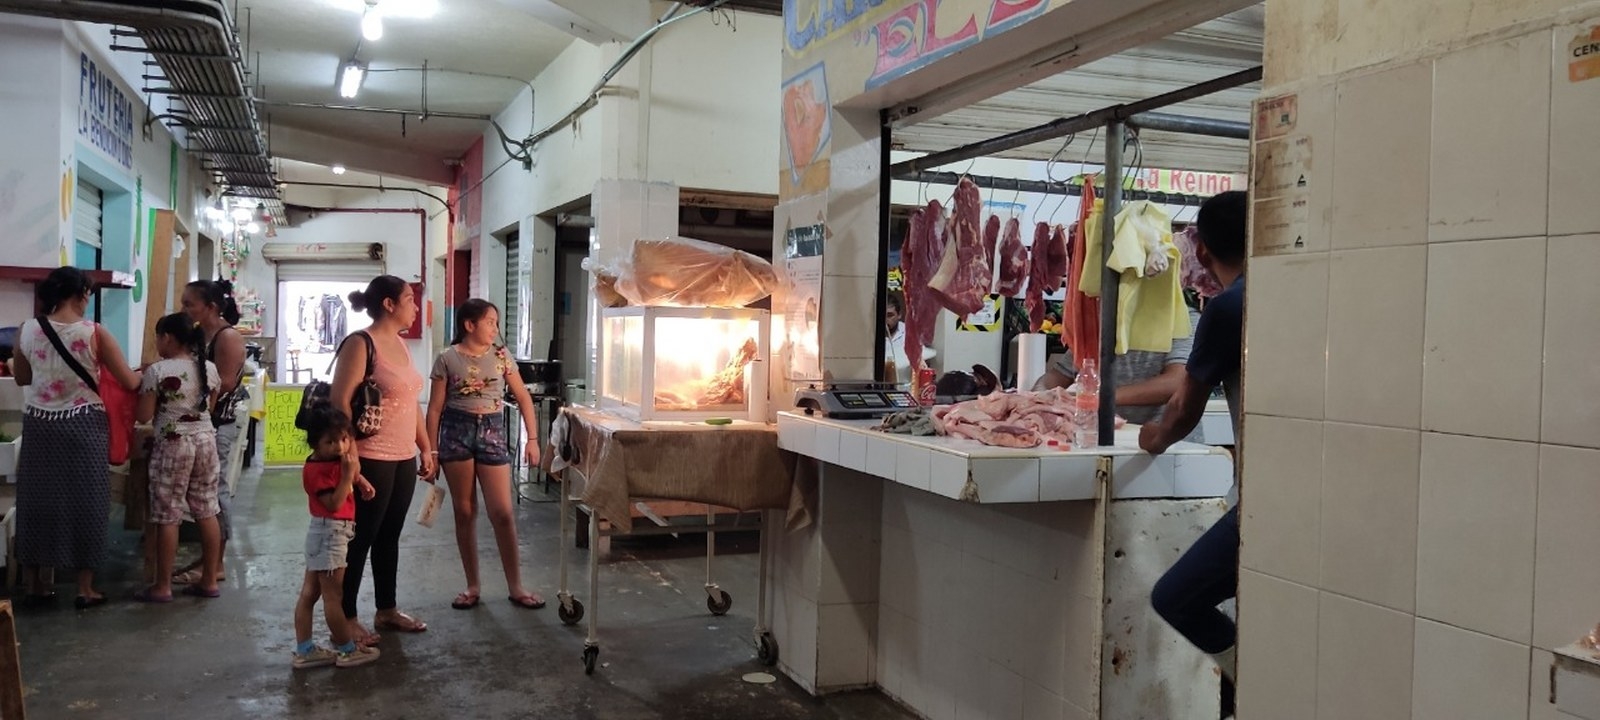 Recesión económica golpea a comerciantes del mercado "Diana Laura Riojas" de Cancún